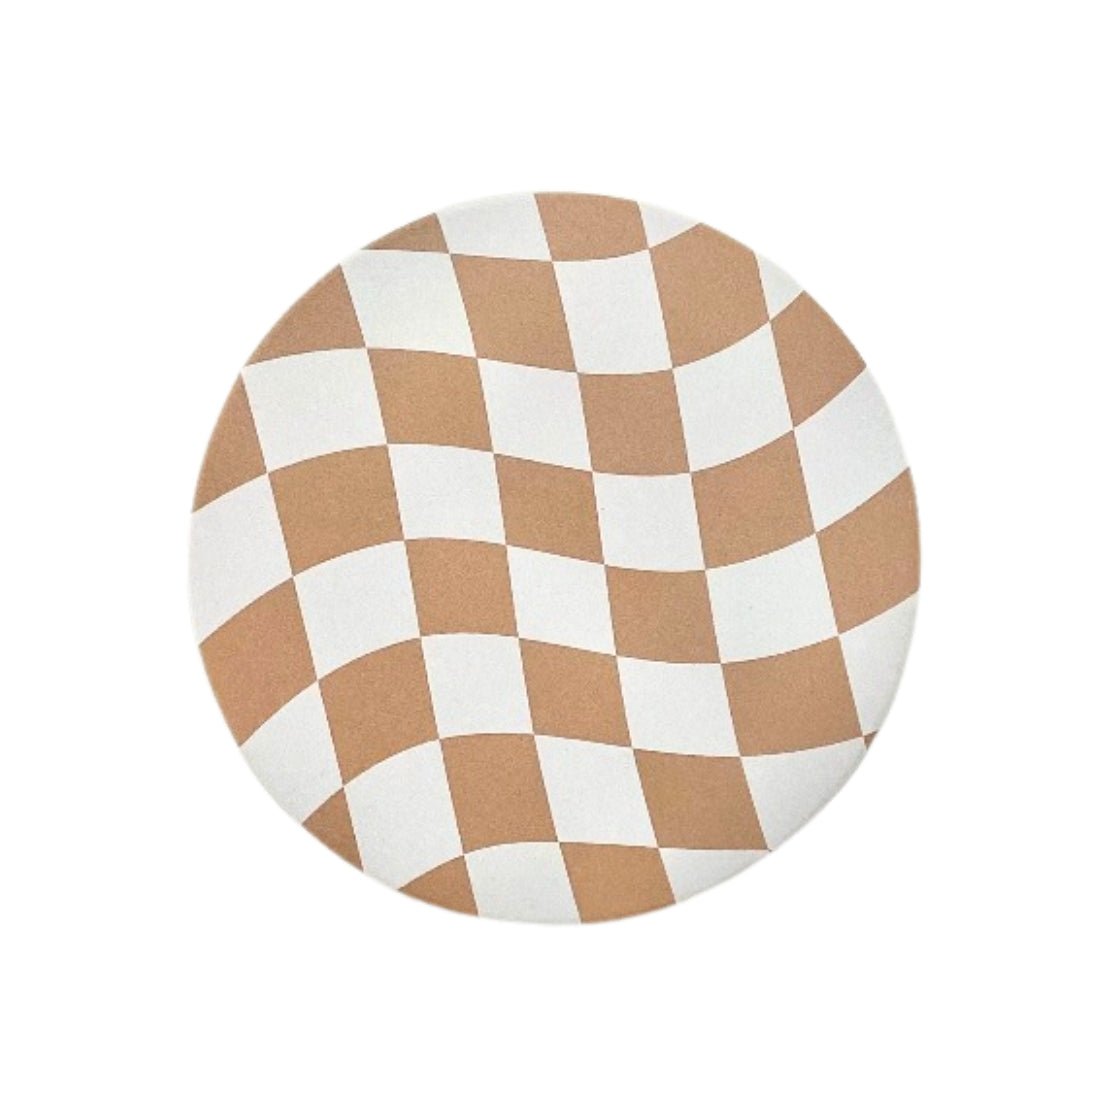 Beige & white checkered pattern round cup coaster